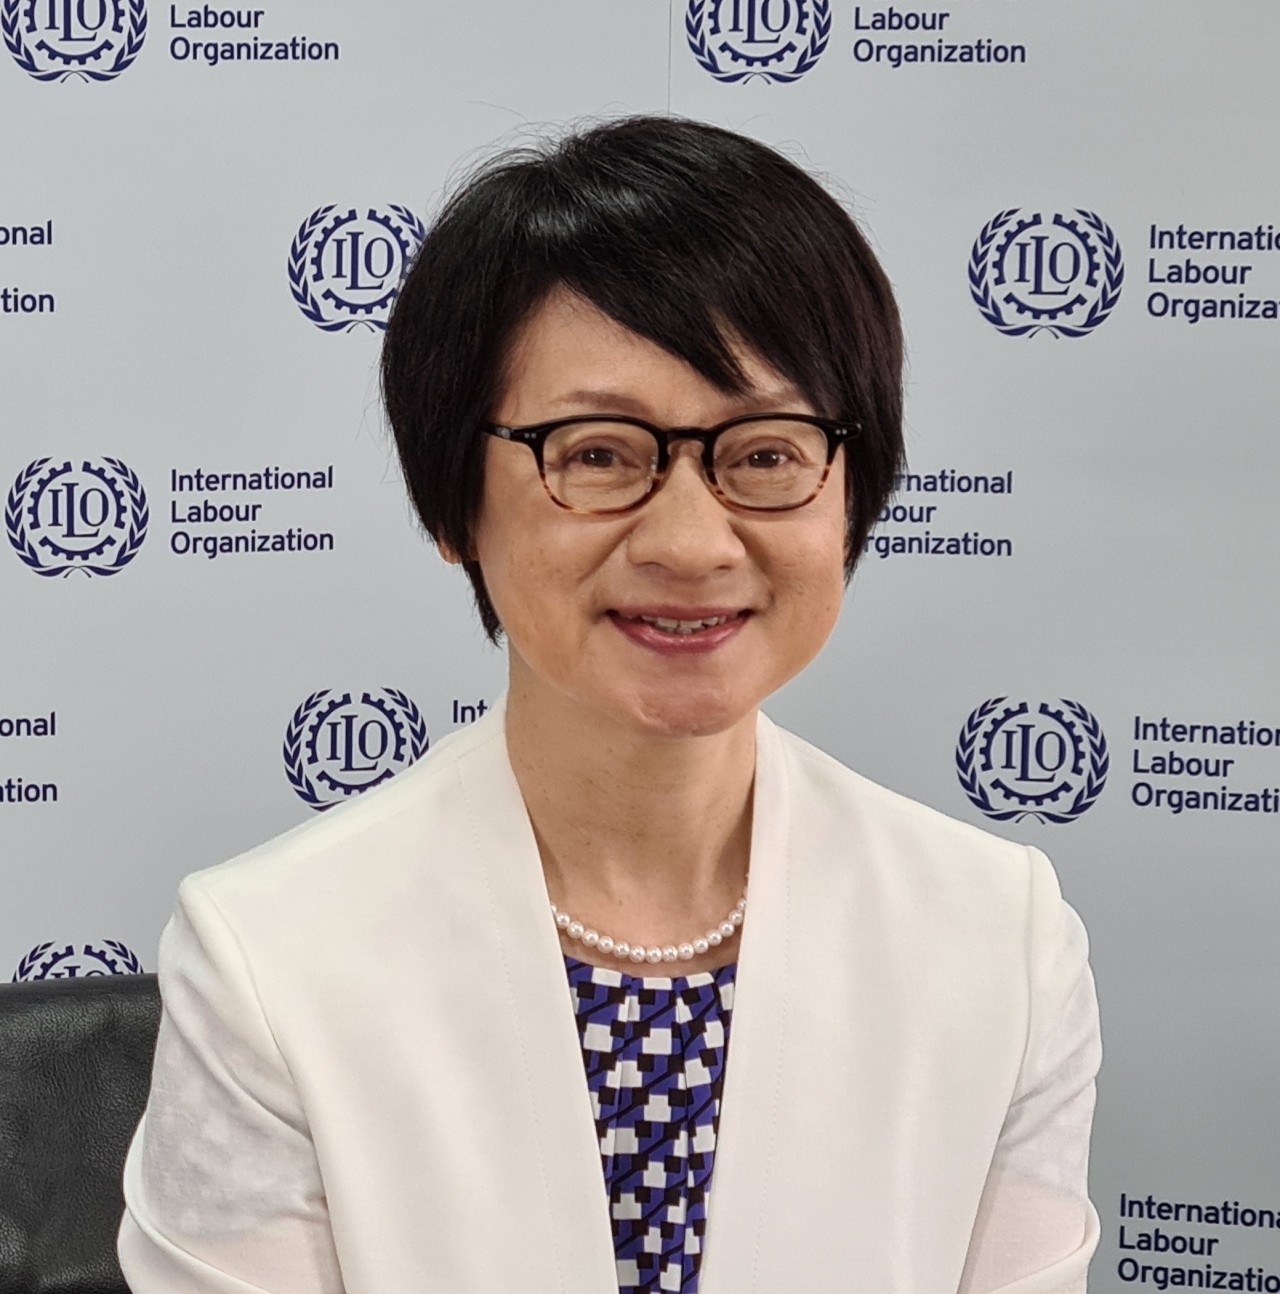 这是国际劳工组织（ILO）亚太办事处主管宫川千穗子（Chihoko Asada Miyakawa）女士在世界工作安全与健康日